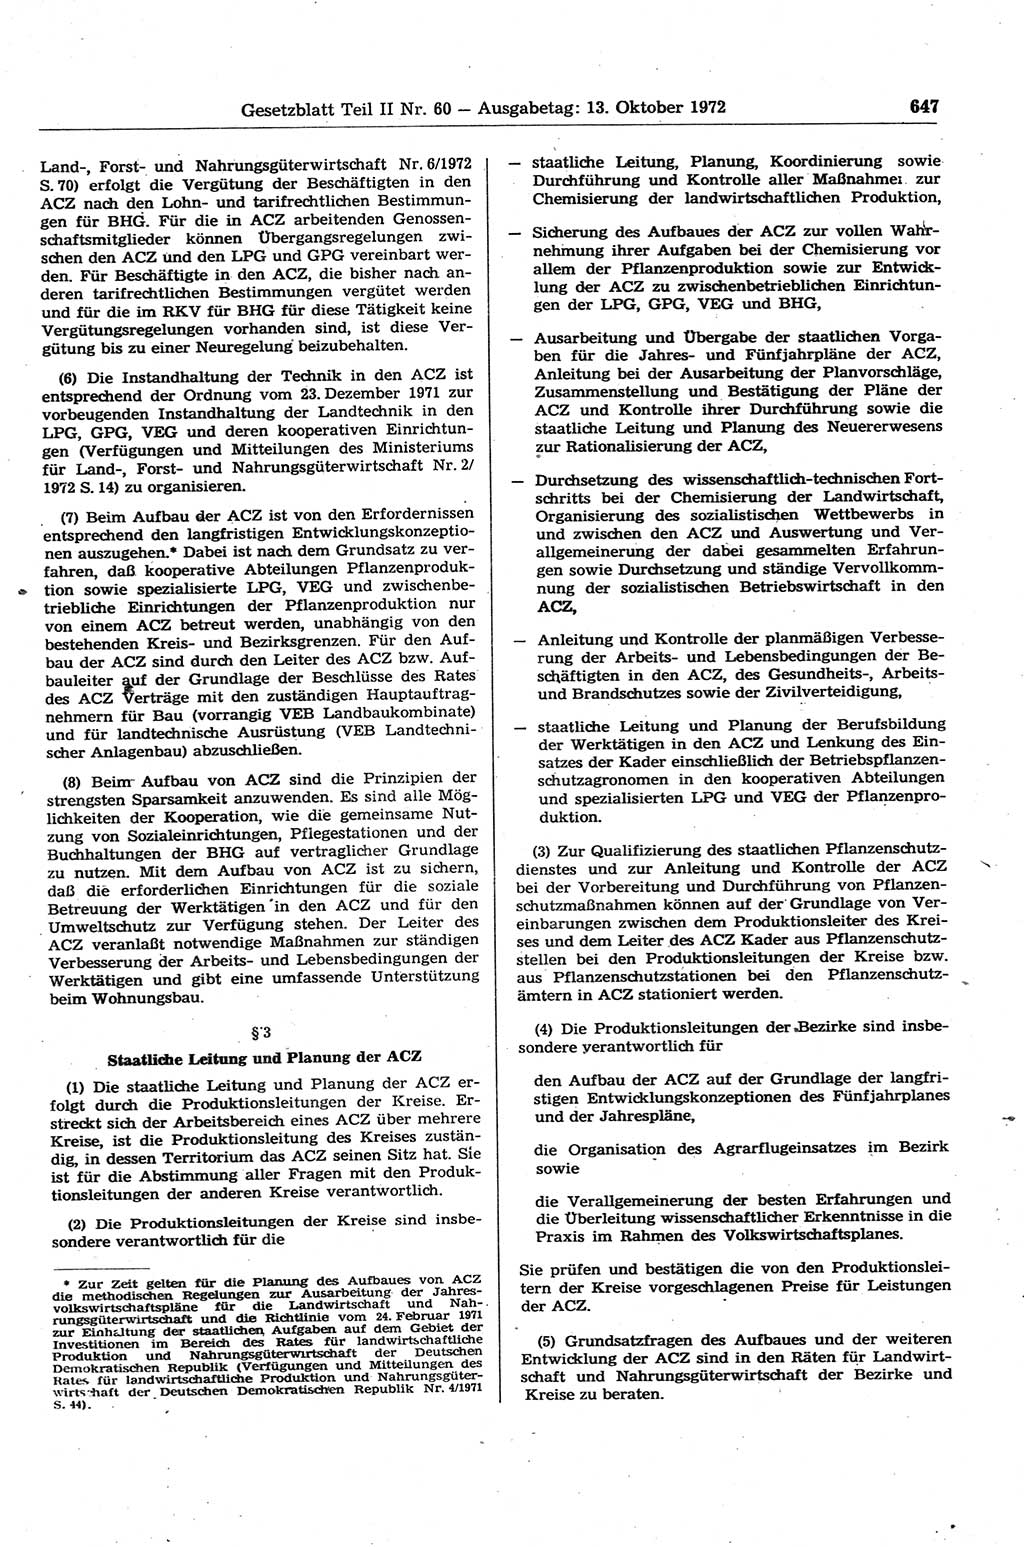 Gesetzblatt (GBl.) der Deutschen Demokratischen Republik (DDR) Teil ⅠⅠ 1972, Seite 647 (GBl. DDR ⅠⅠ 1972, S. 647)